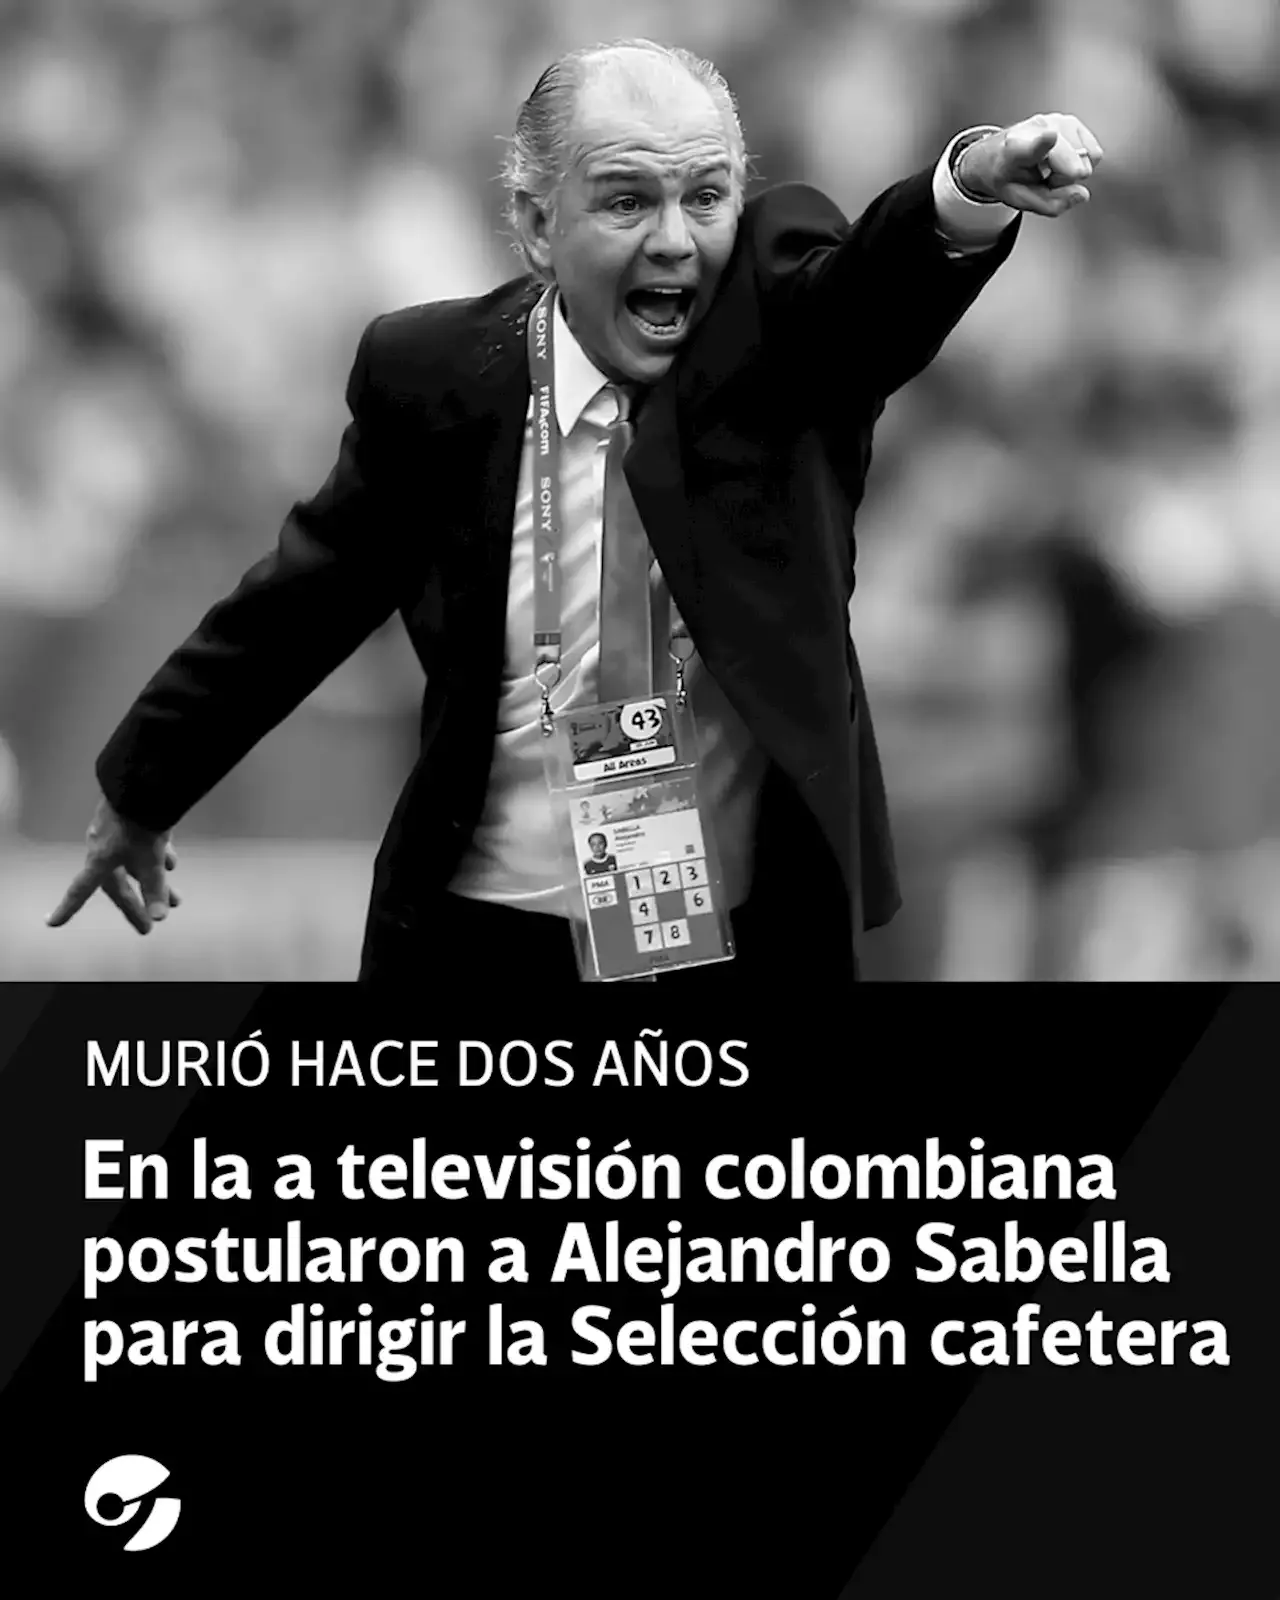 Increíble momento en la televisión colombiana: postularon a Alejandro Sabella para dirigir la Selección cafetera